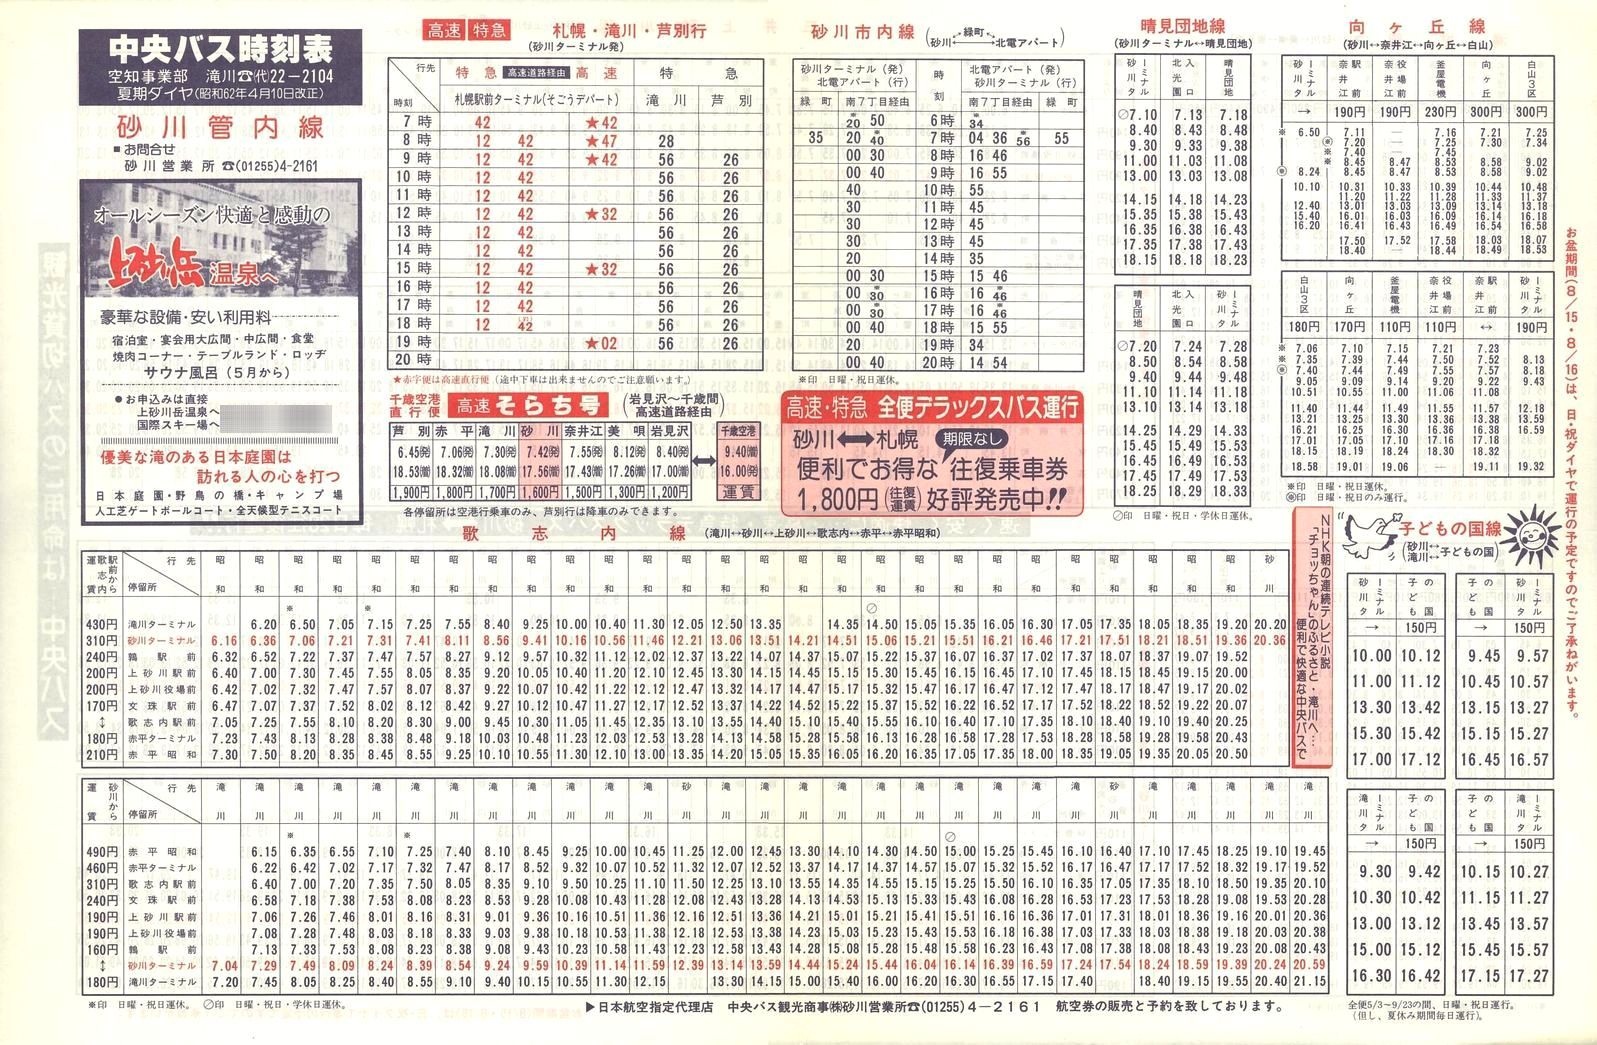 1987-04-10改正_北海道中央バス(空知)_砂川管内線時刻表表面